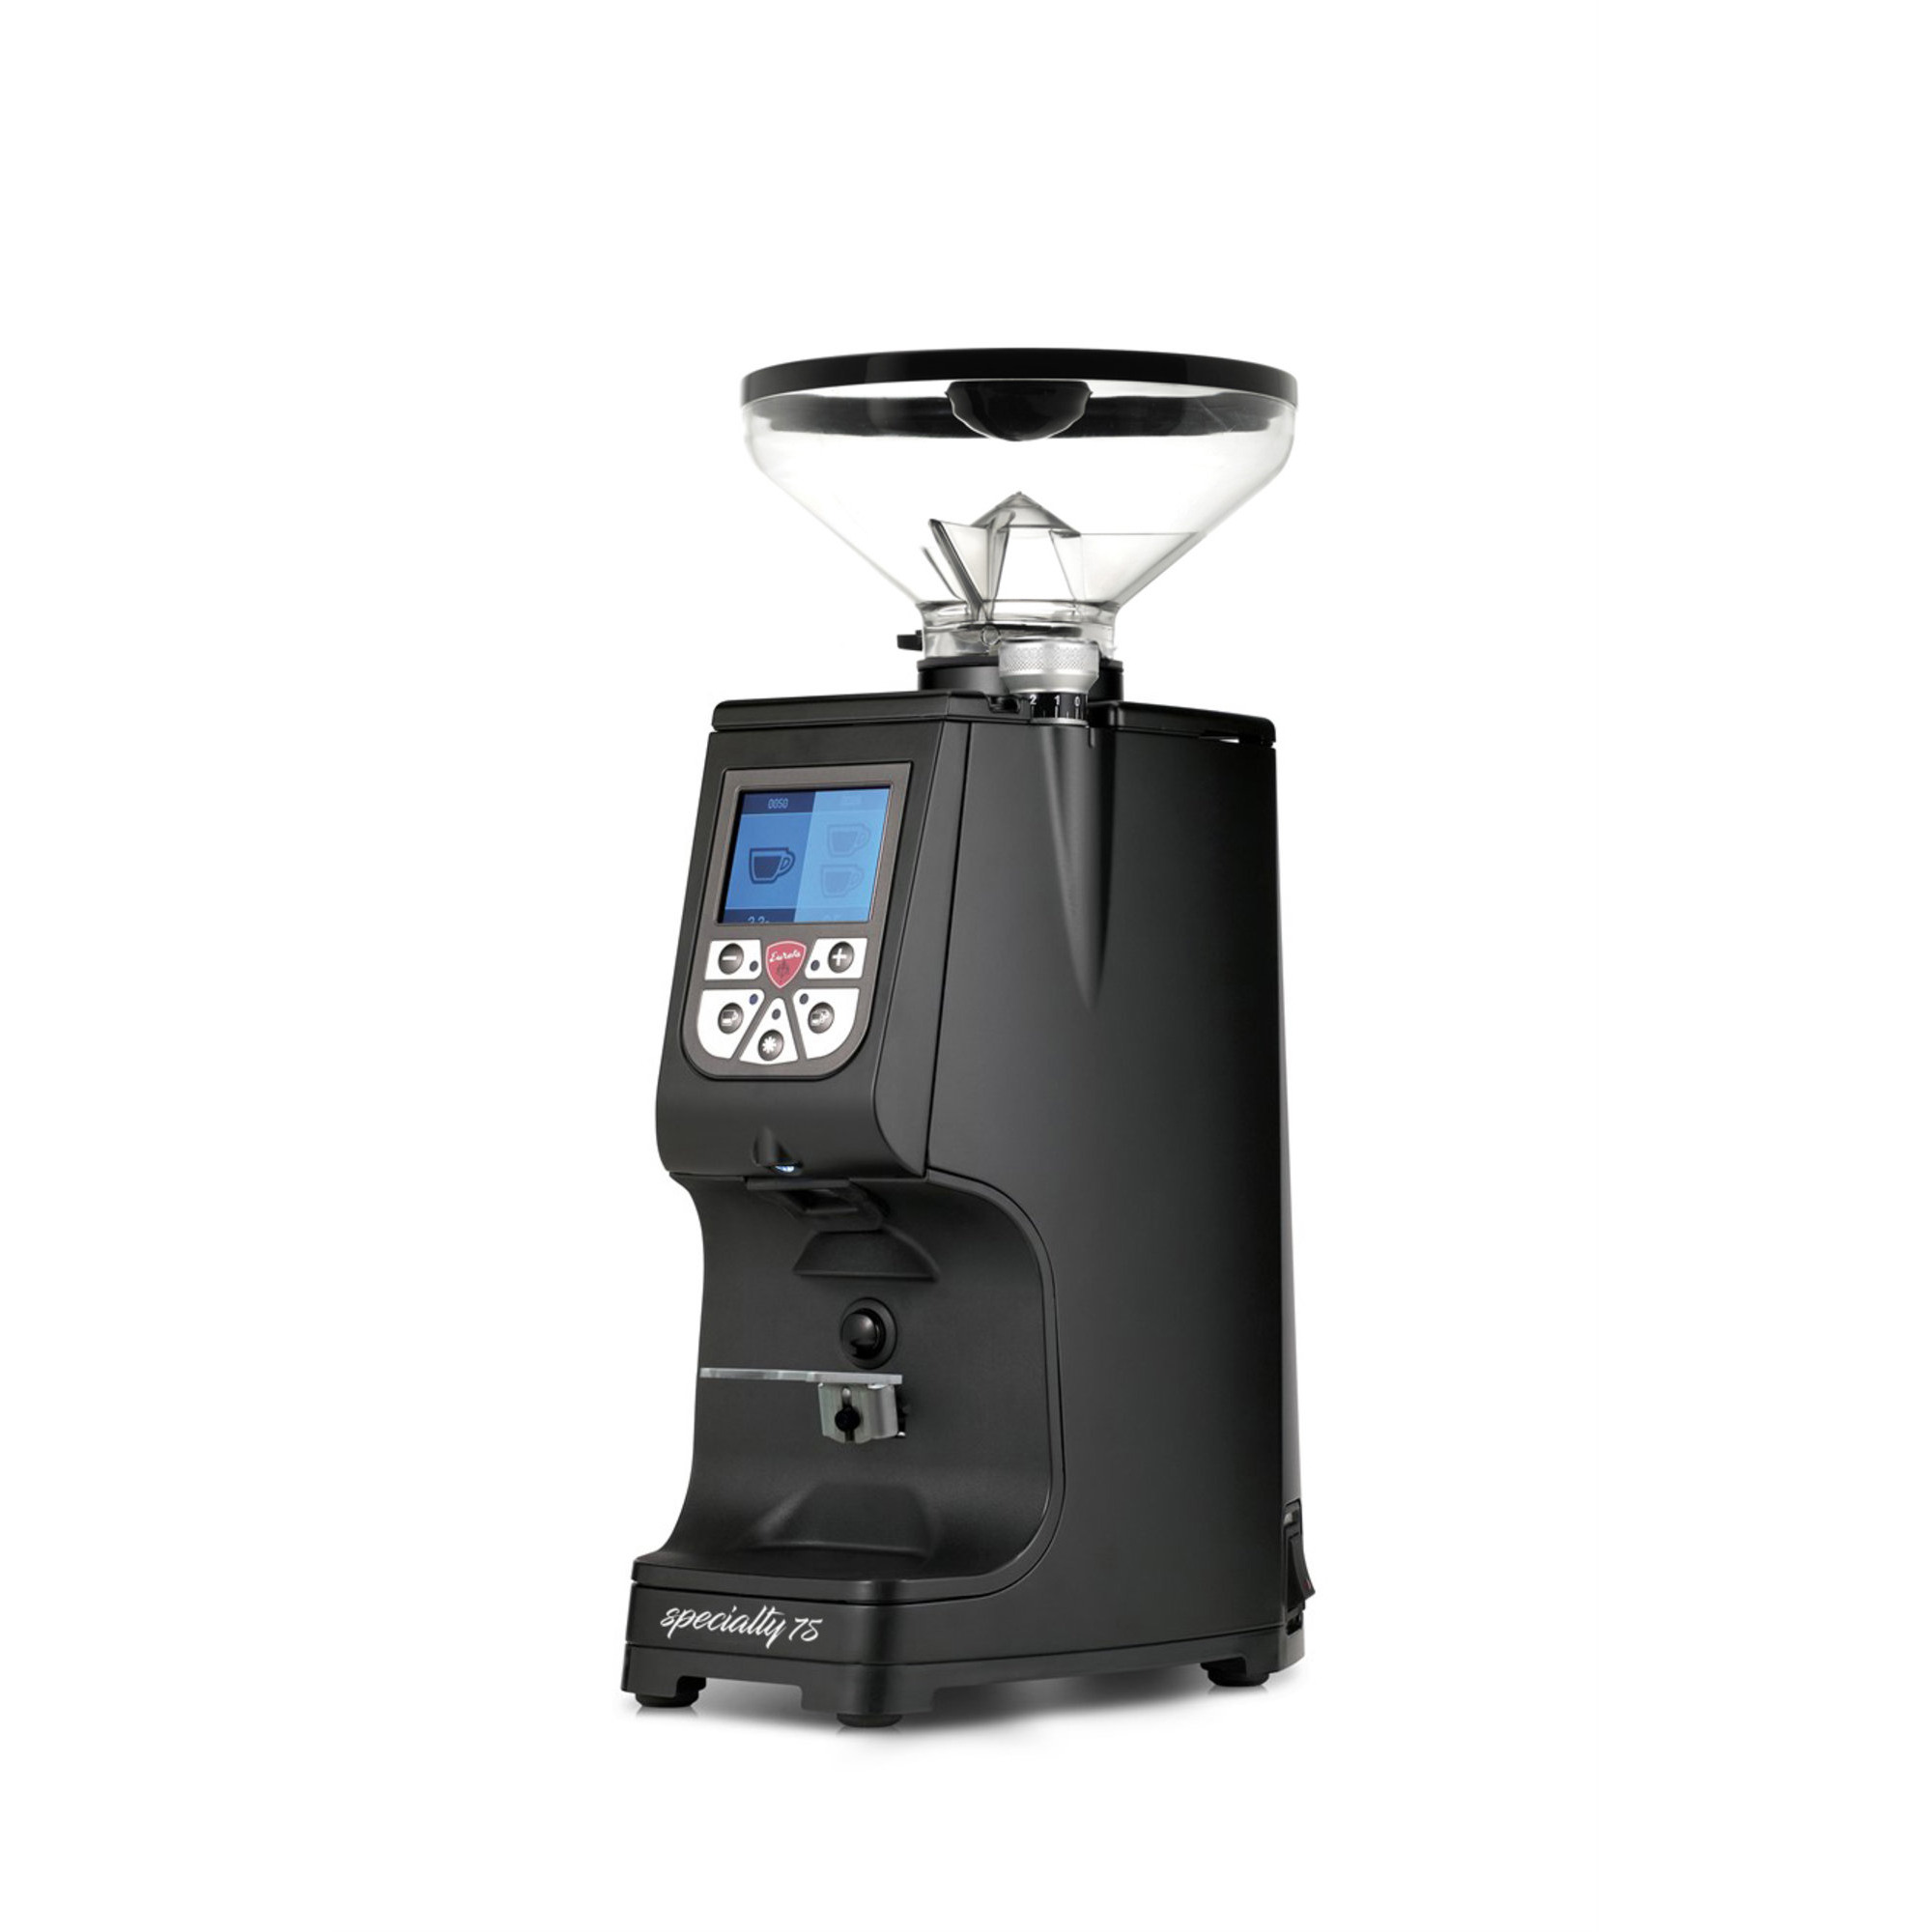 Läs mer om Eureka ATOM Specialty 75 elektrisk kaffekvarn